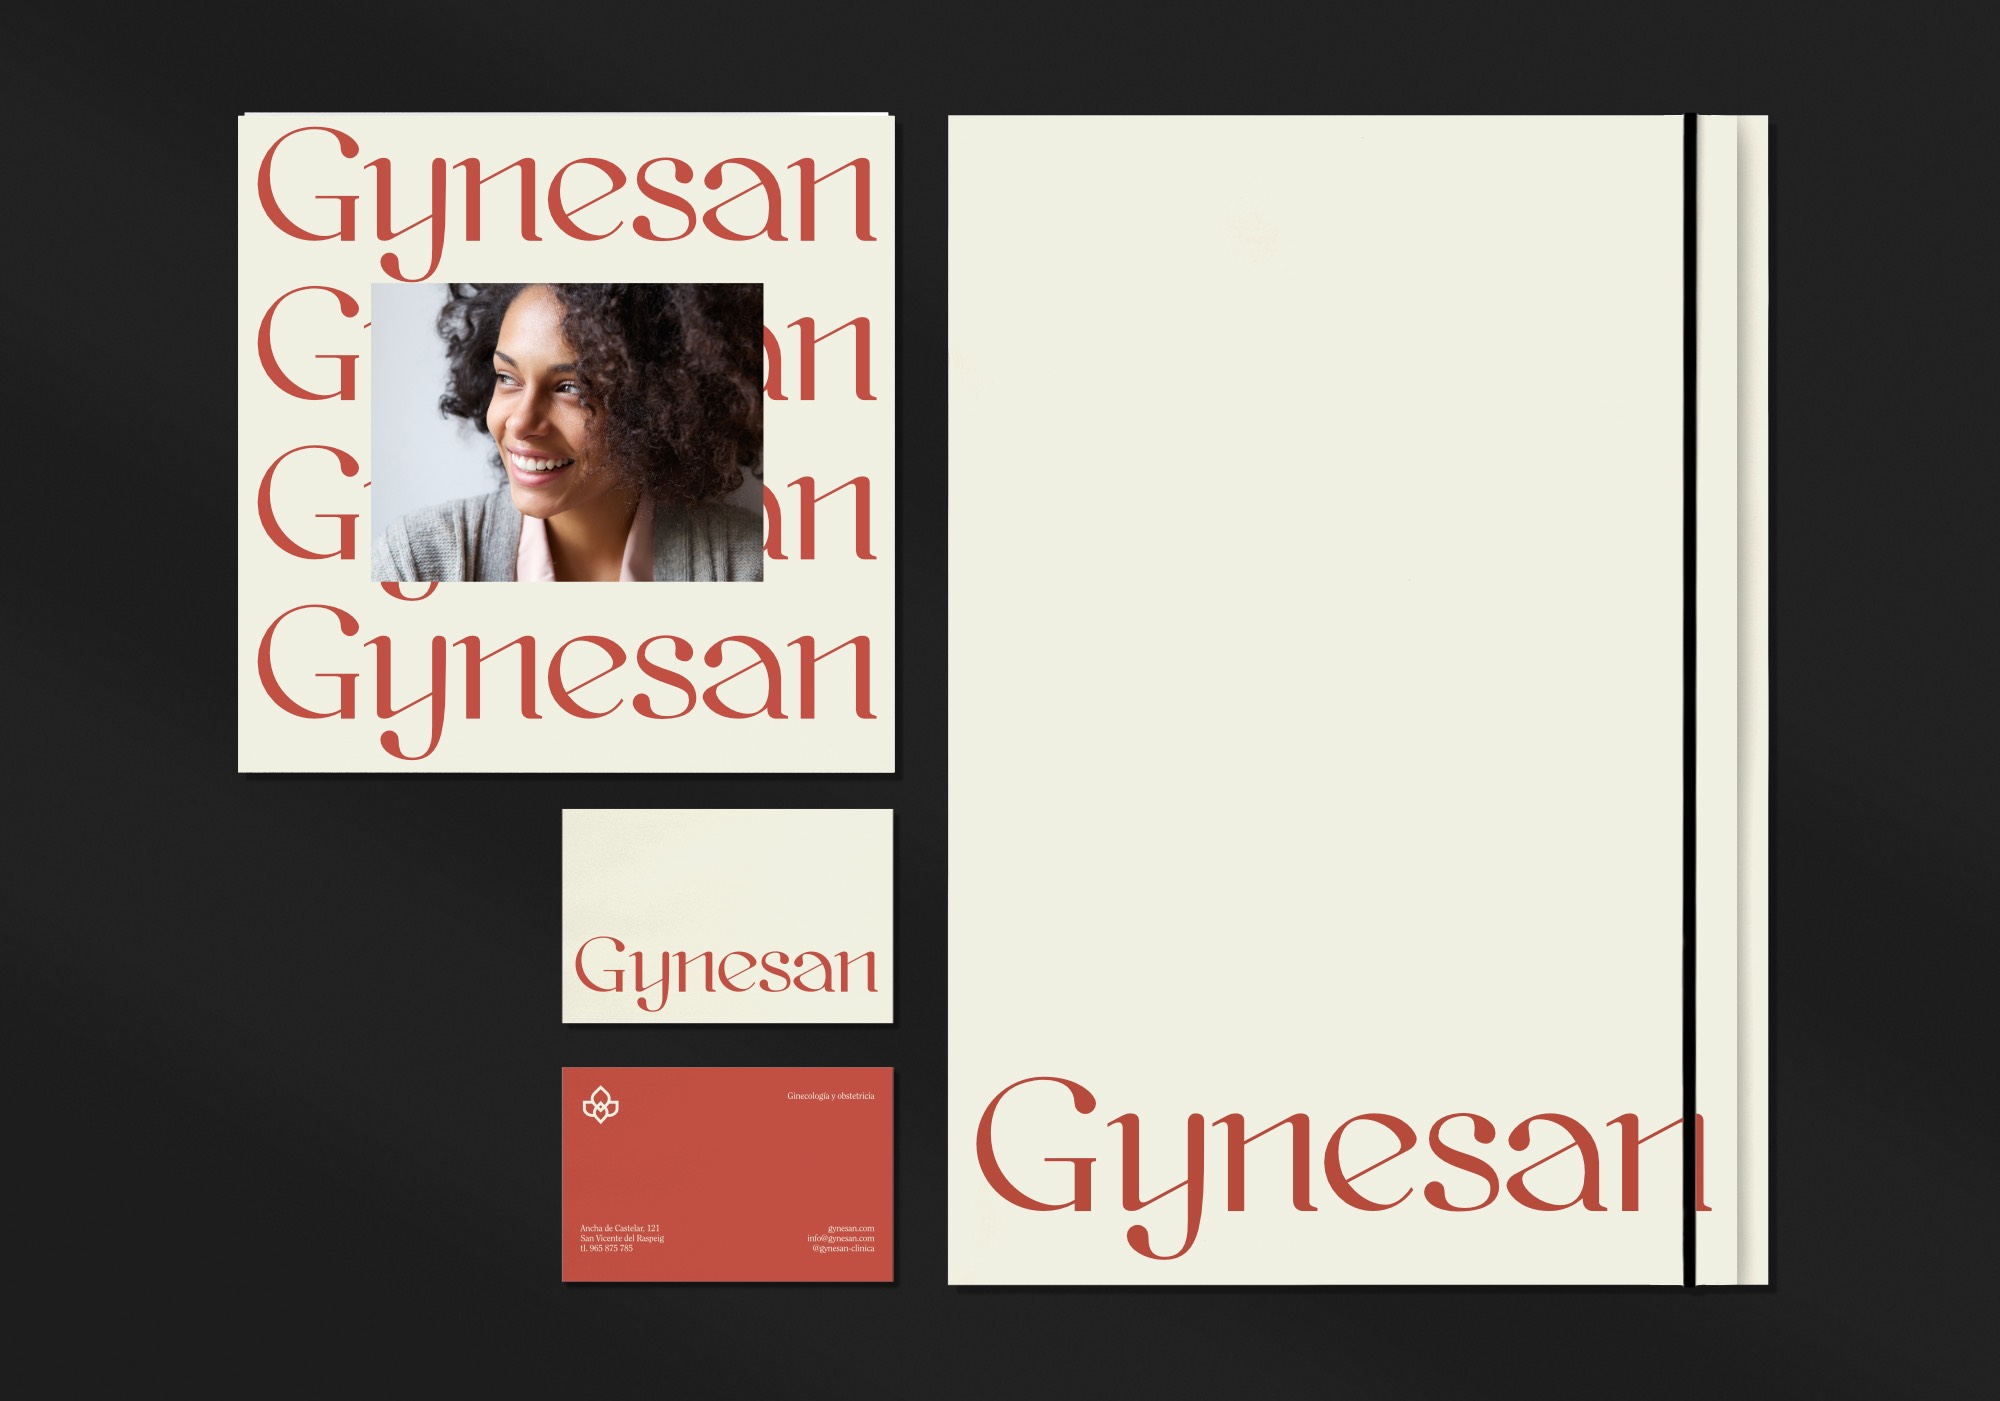 Diseño y desarrollo de identidad visual corporativa para Gynesan. Detalle papelería corporativa